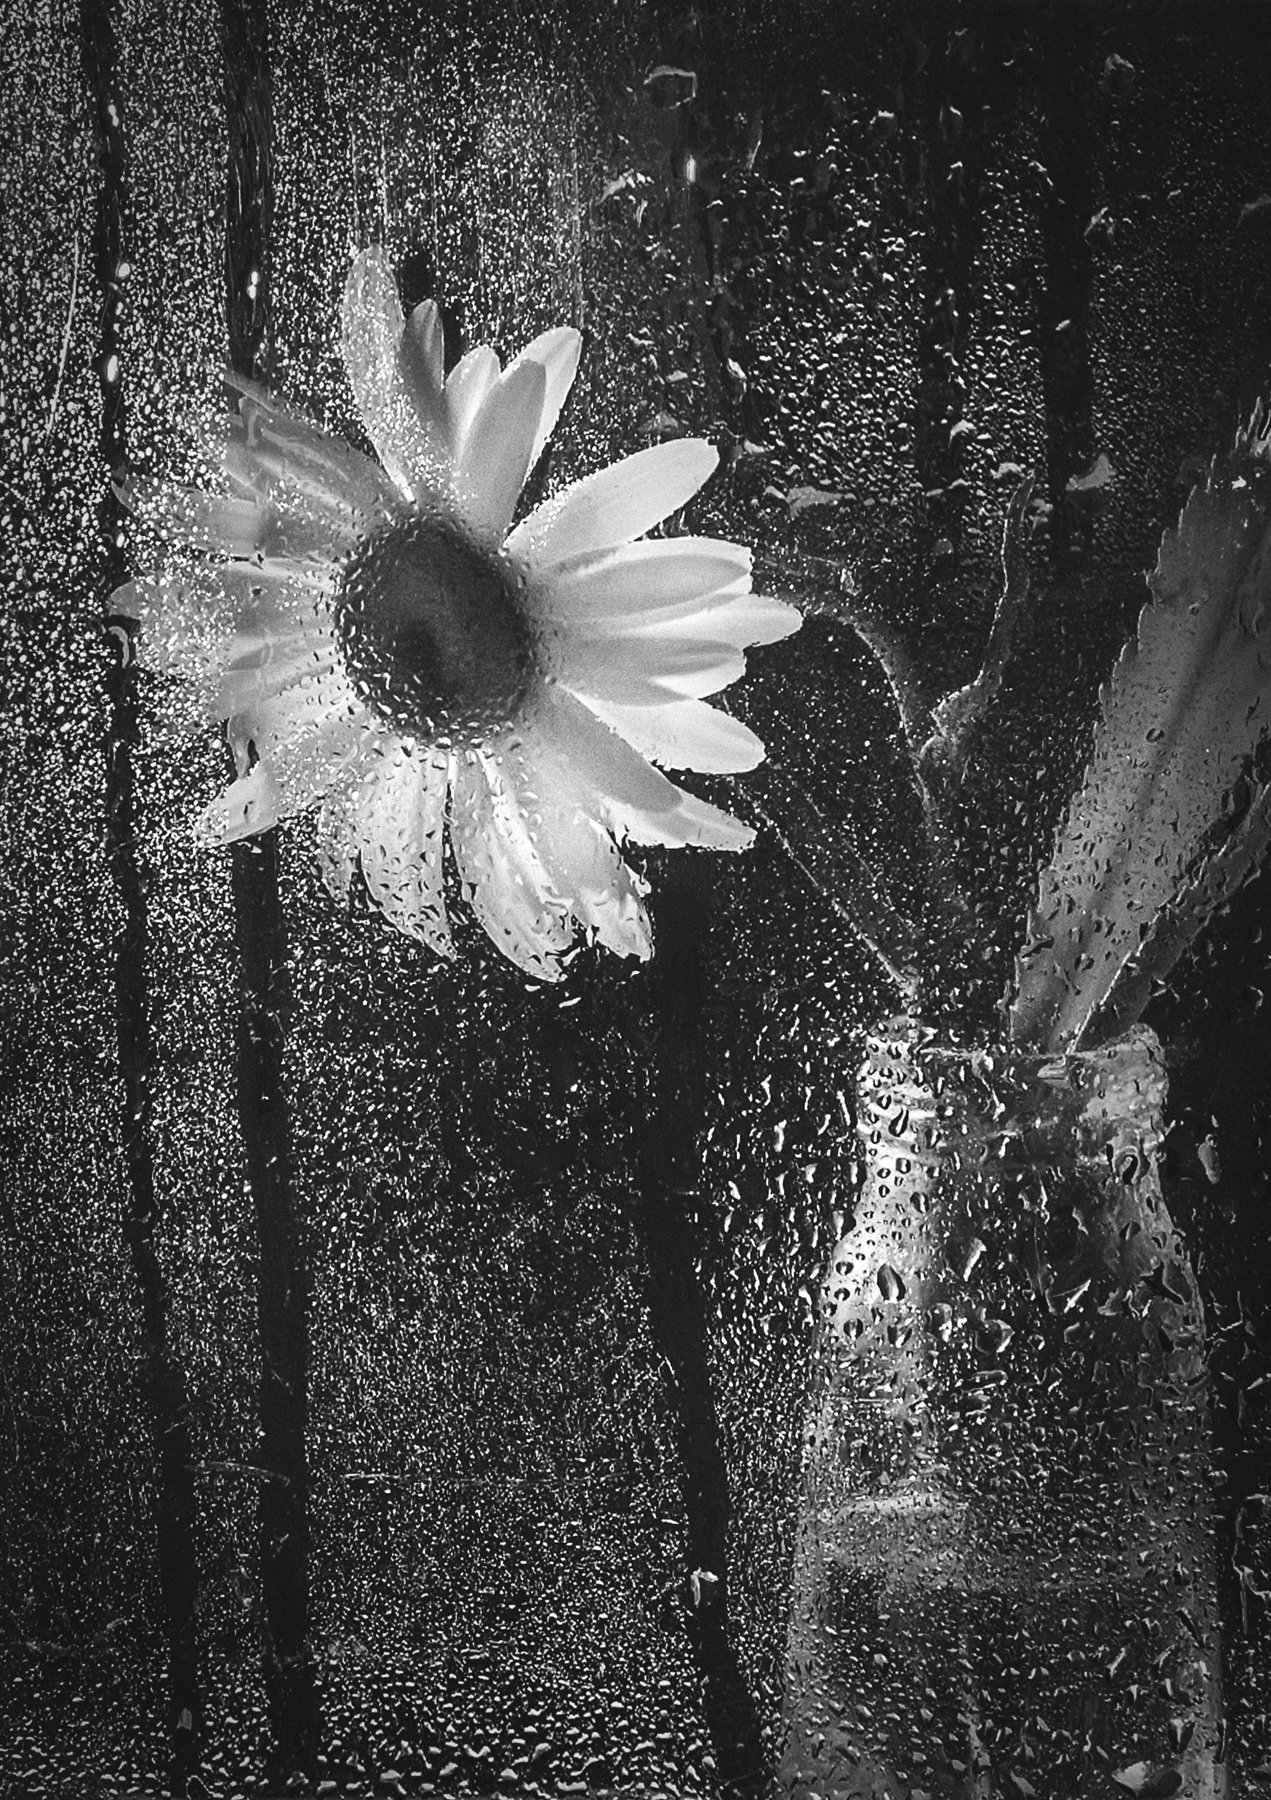 дождь,тоска,одиночество,чёрно-белый,ромашка,цветок,капли, Владимир Володин